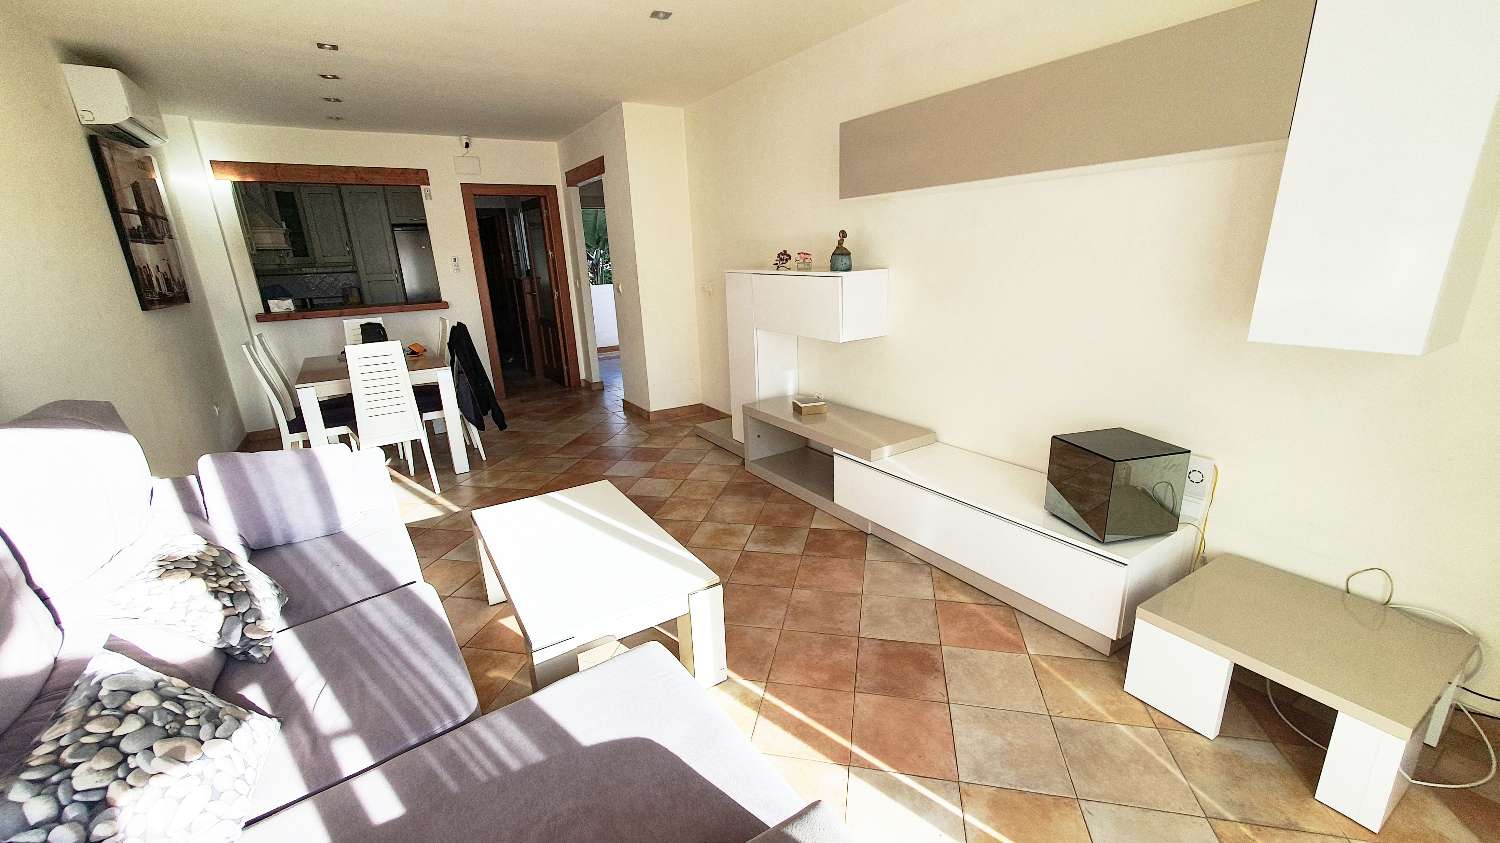 Lejlighed til salg i Almuñecar med stor terrasse og tæt på San Cristobal strand